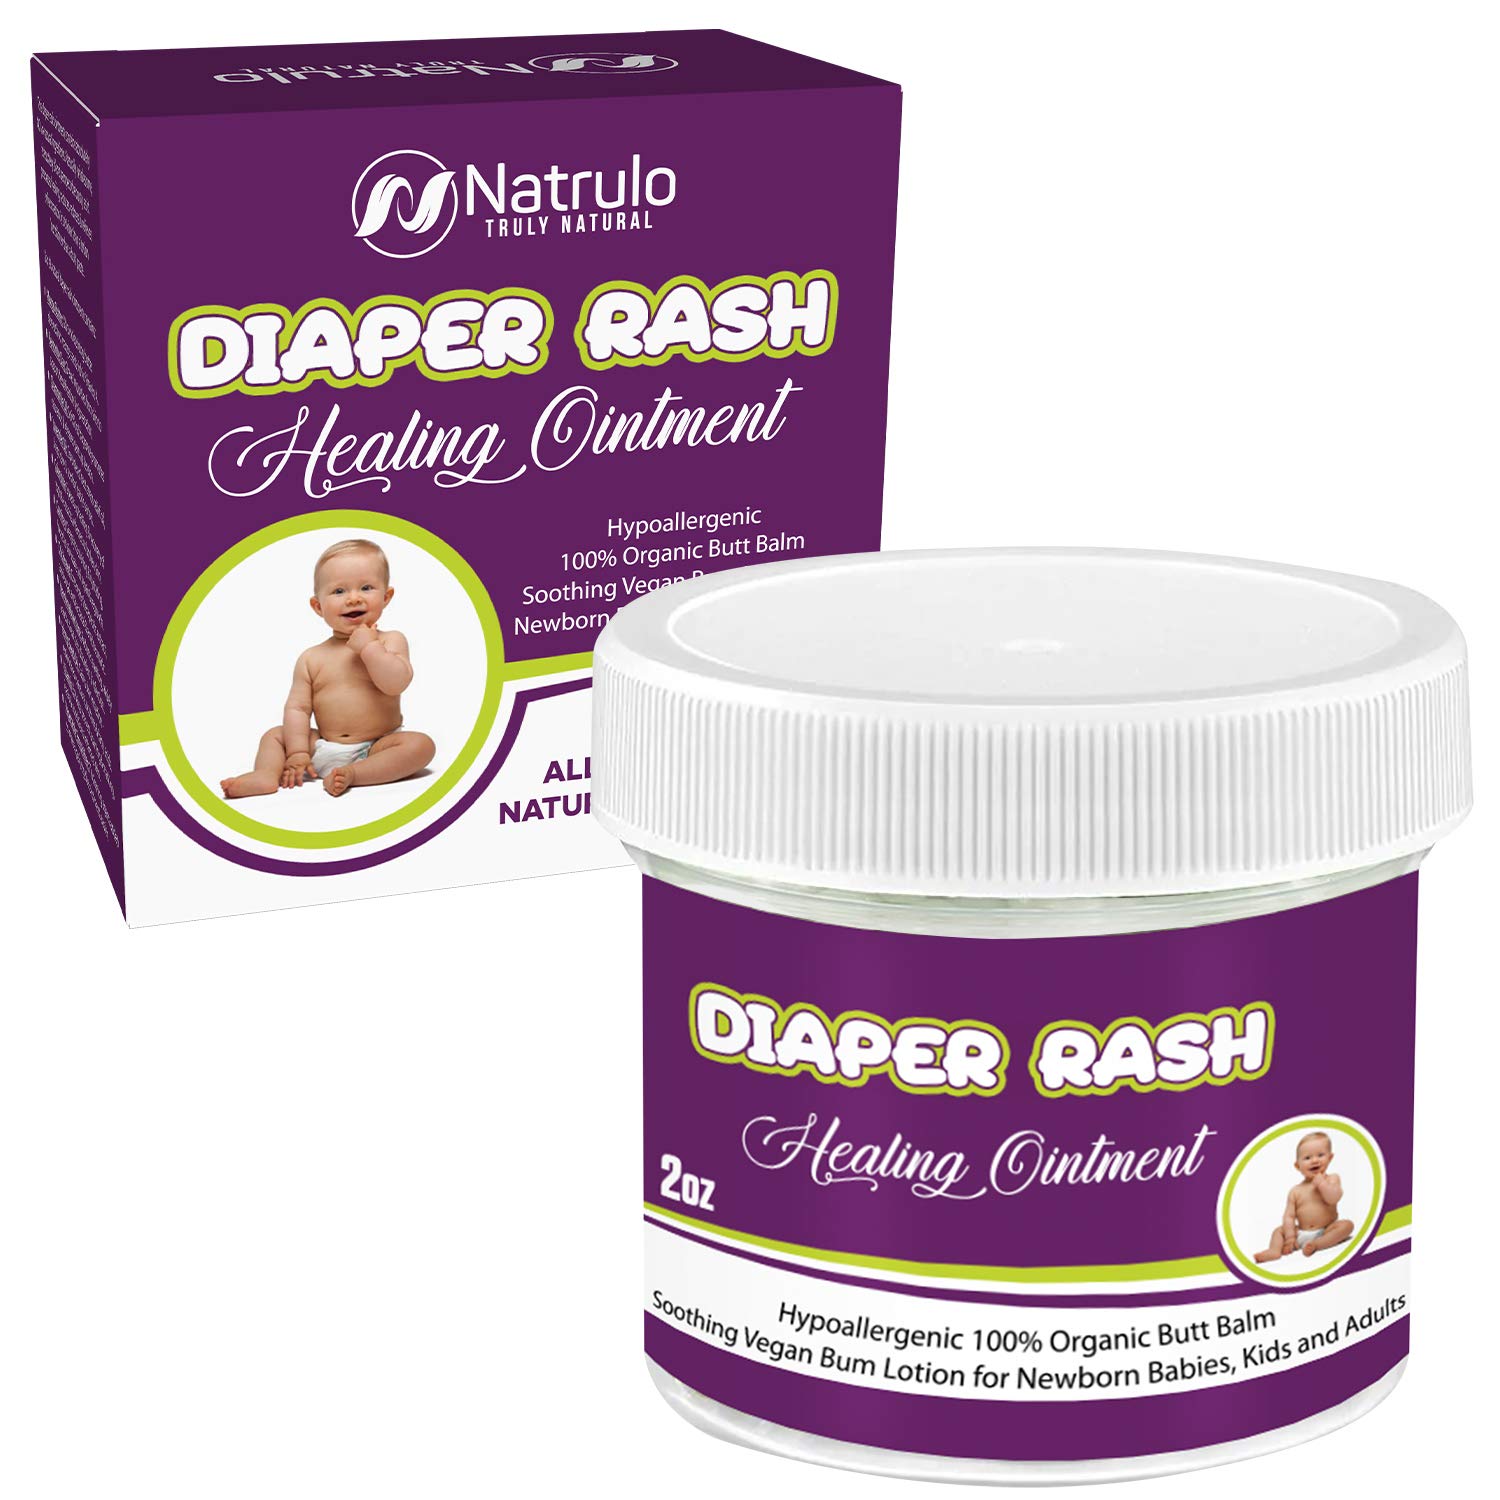 Forget all the diaper rash creams—get RESINOL!! 🙌🏻 #diaperrash